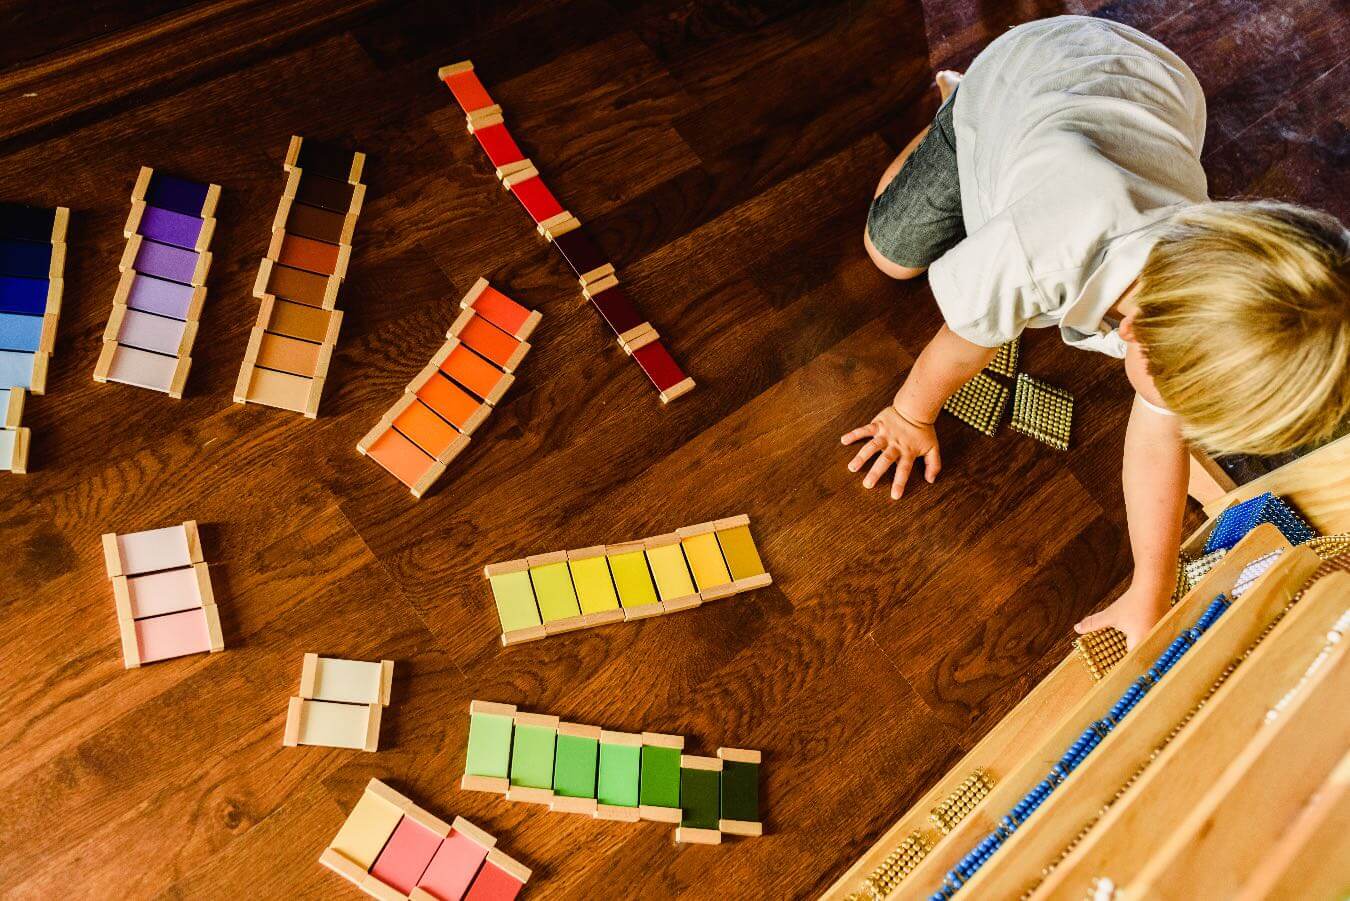 Zabawki Montessori. Te pomoce dydaktyczne skutecznie wspierają rozwój dziecka. Poleca je Maria Montessori!